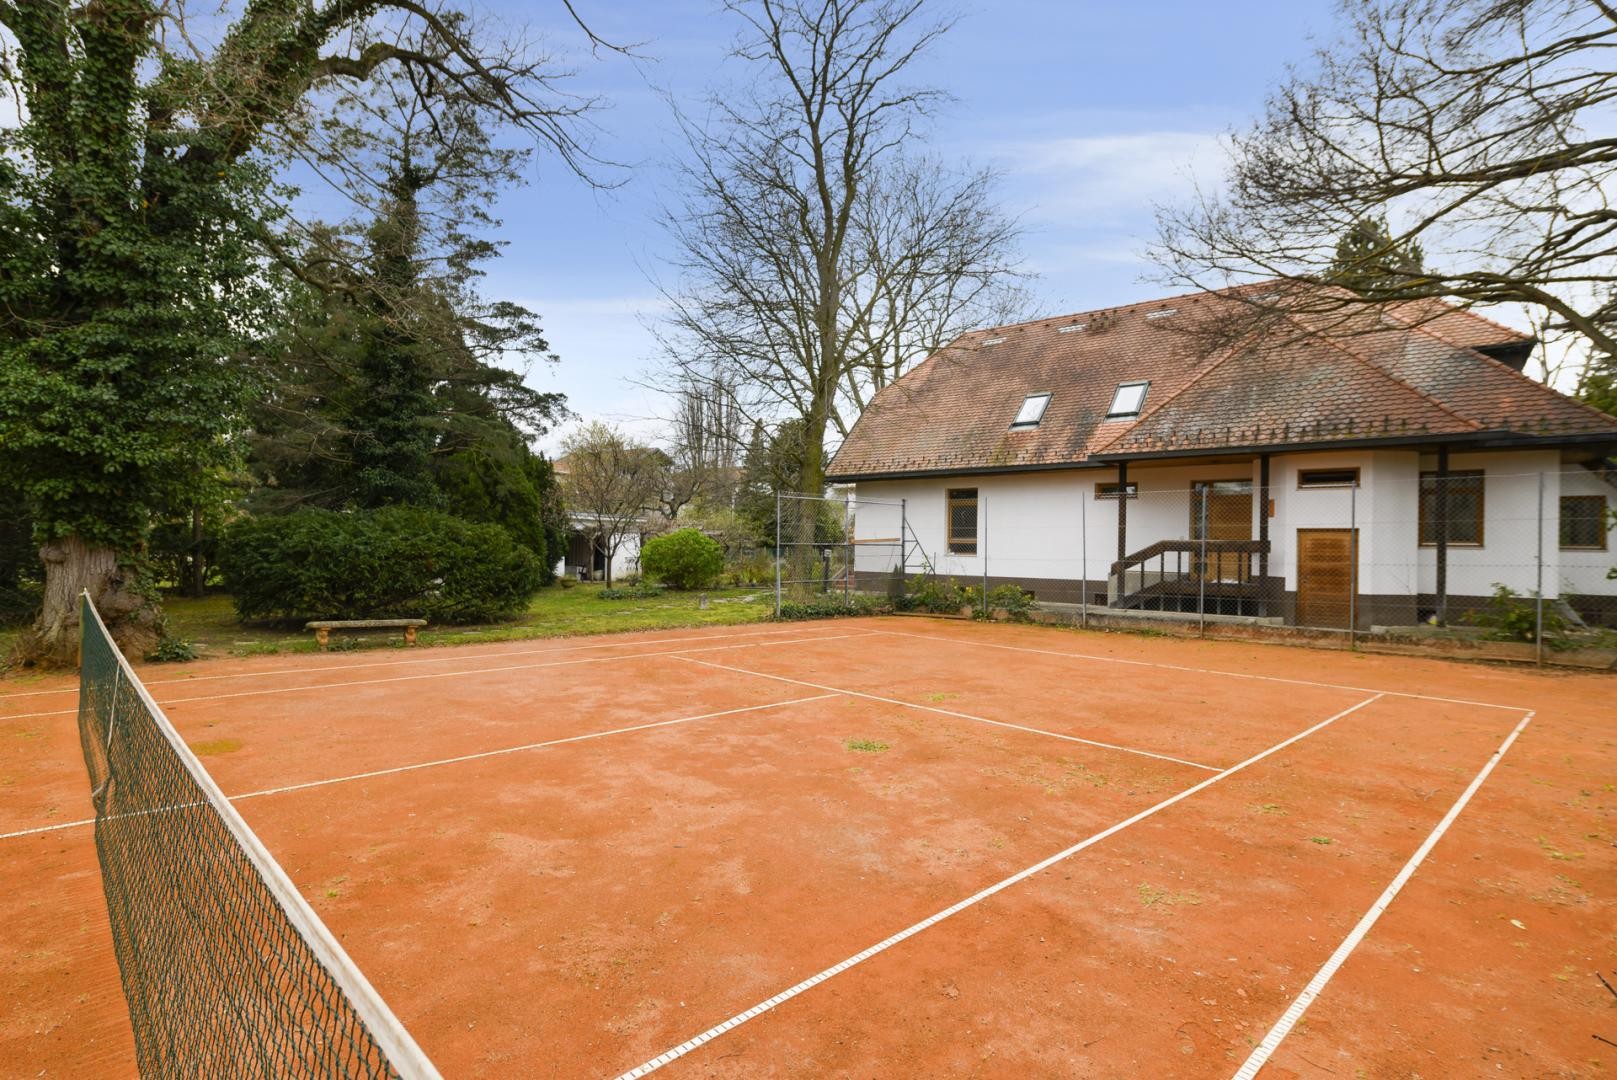 Thomas Immobilien- Ruheoase in bester Villenlage mit eigenem Tennisplatz, Pool und großzügigem Garten